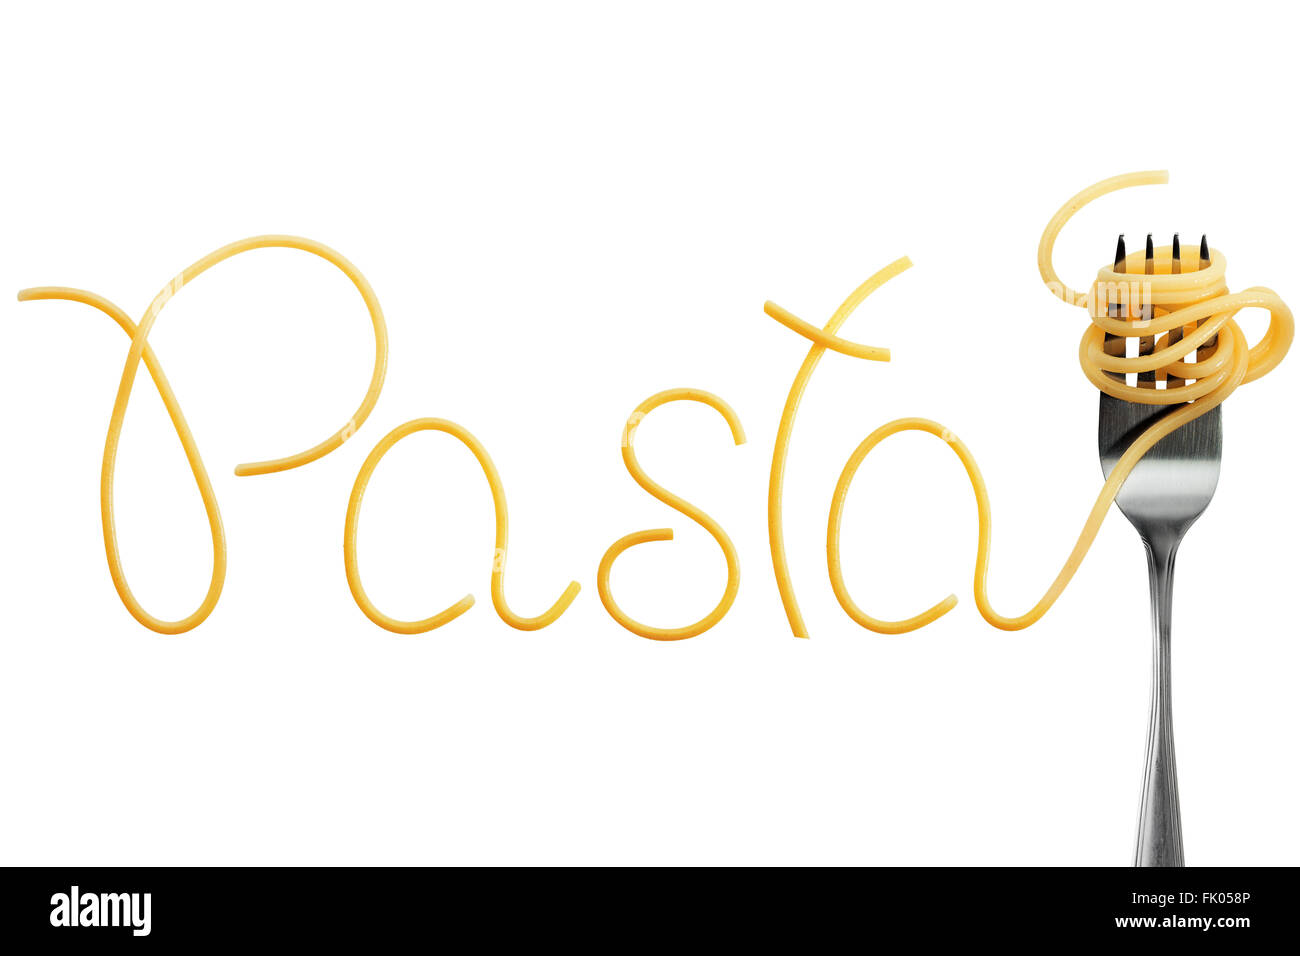 Gabel mit Spaghetti, Pasta, Rechtschreibung, auf weißem Hintergrund Stockfoto